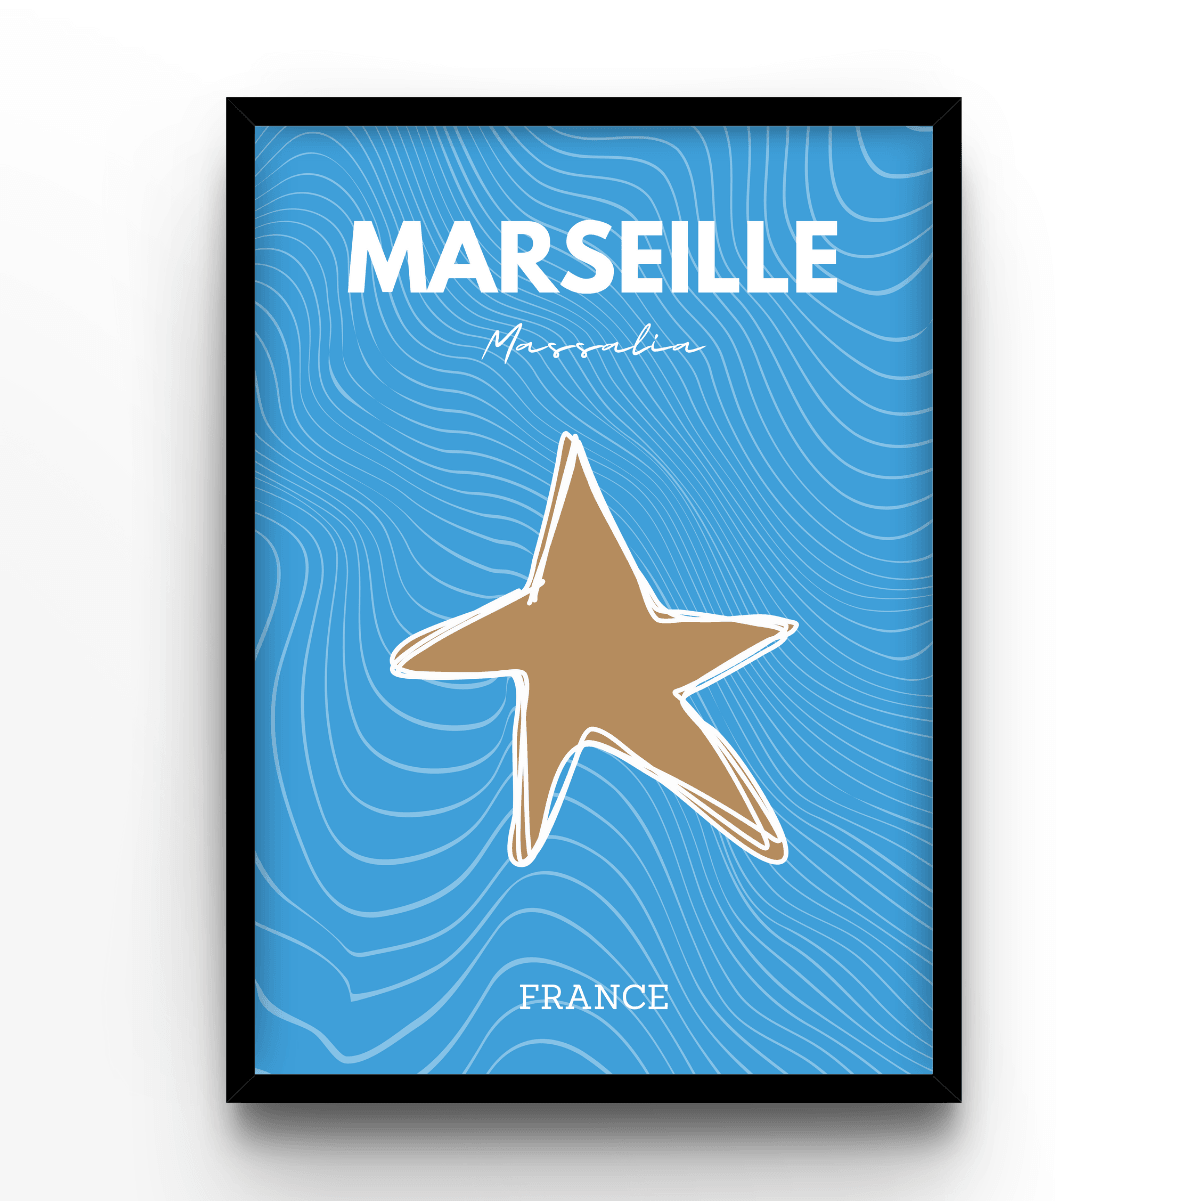 Marseille - A4, A3, A2 Posters Base - Poster Print Shop / Art Prints / PostersBase